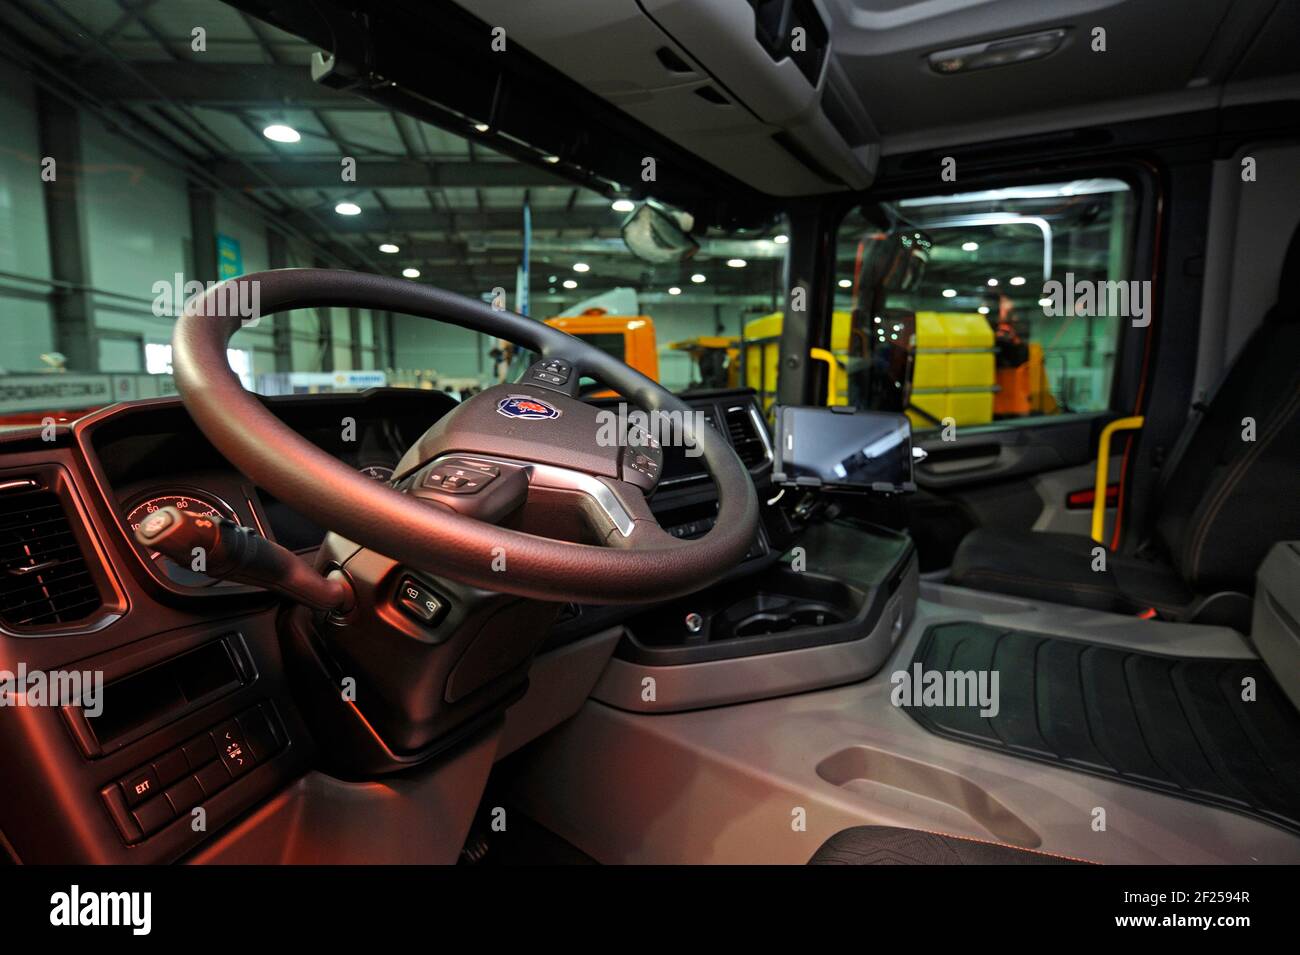 Intérieur d'un nouveau modèle de camion à benne Scania cabine: Siège, roue, tableau de bord Banque D'Images